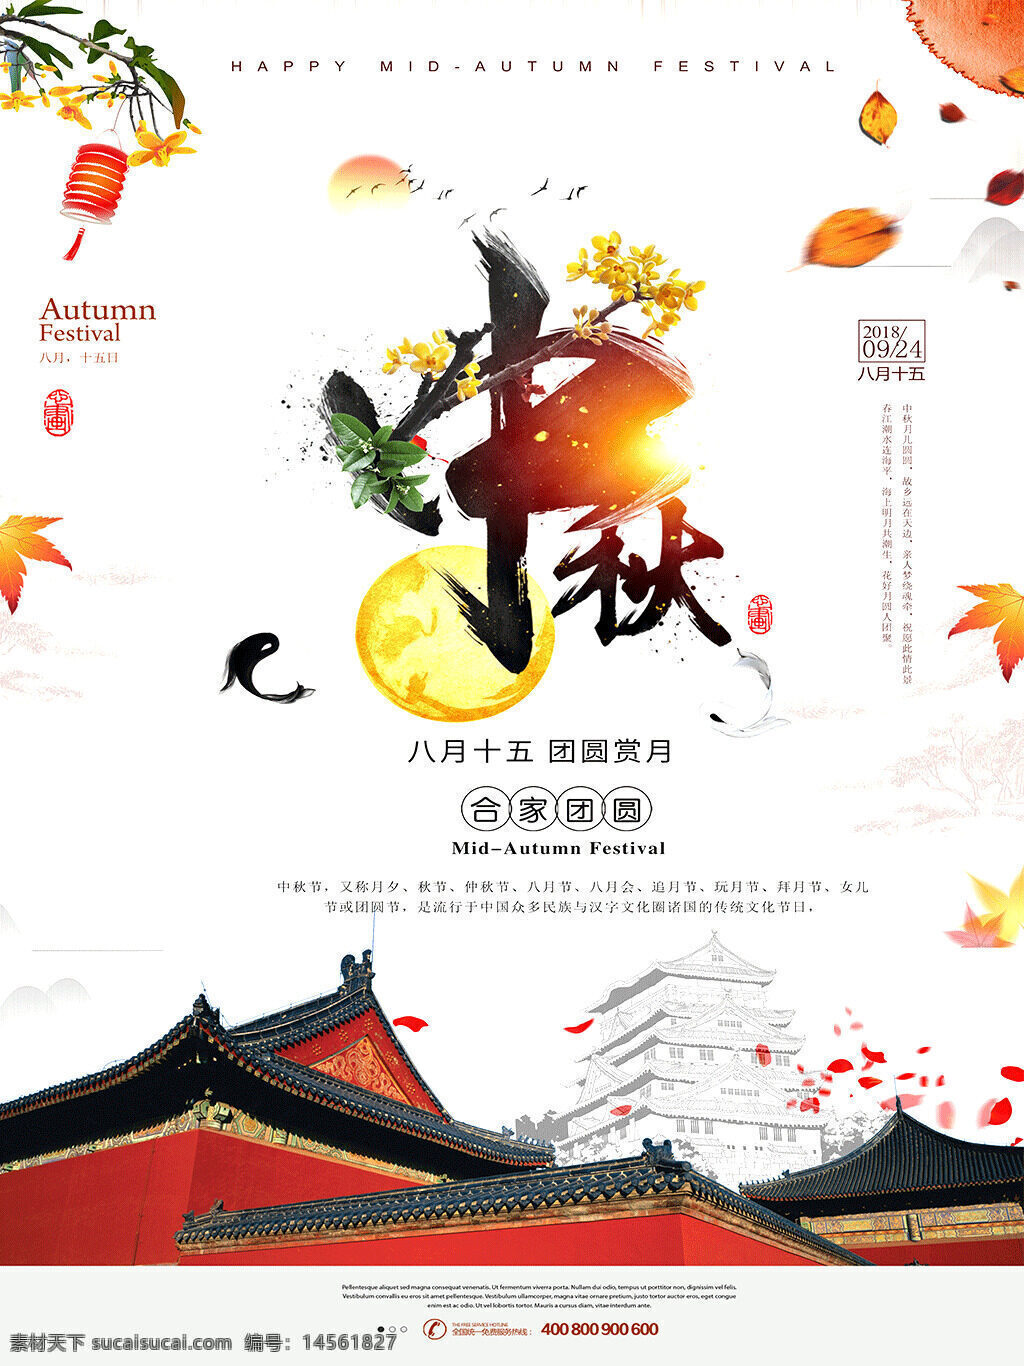 秋节封面 中秋佳节 中秋节素材 中国风 高端 设计 广告设计 海报设计